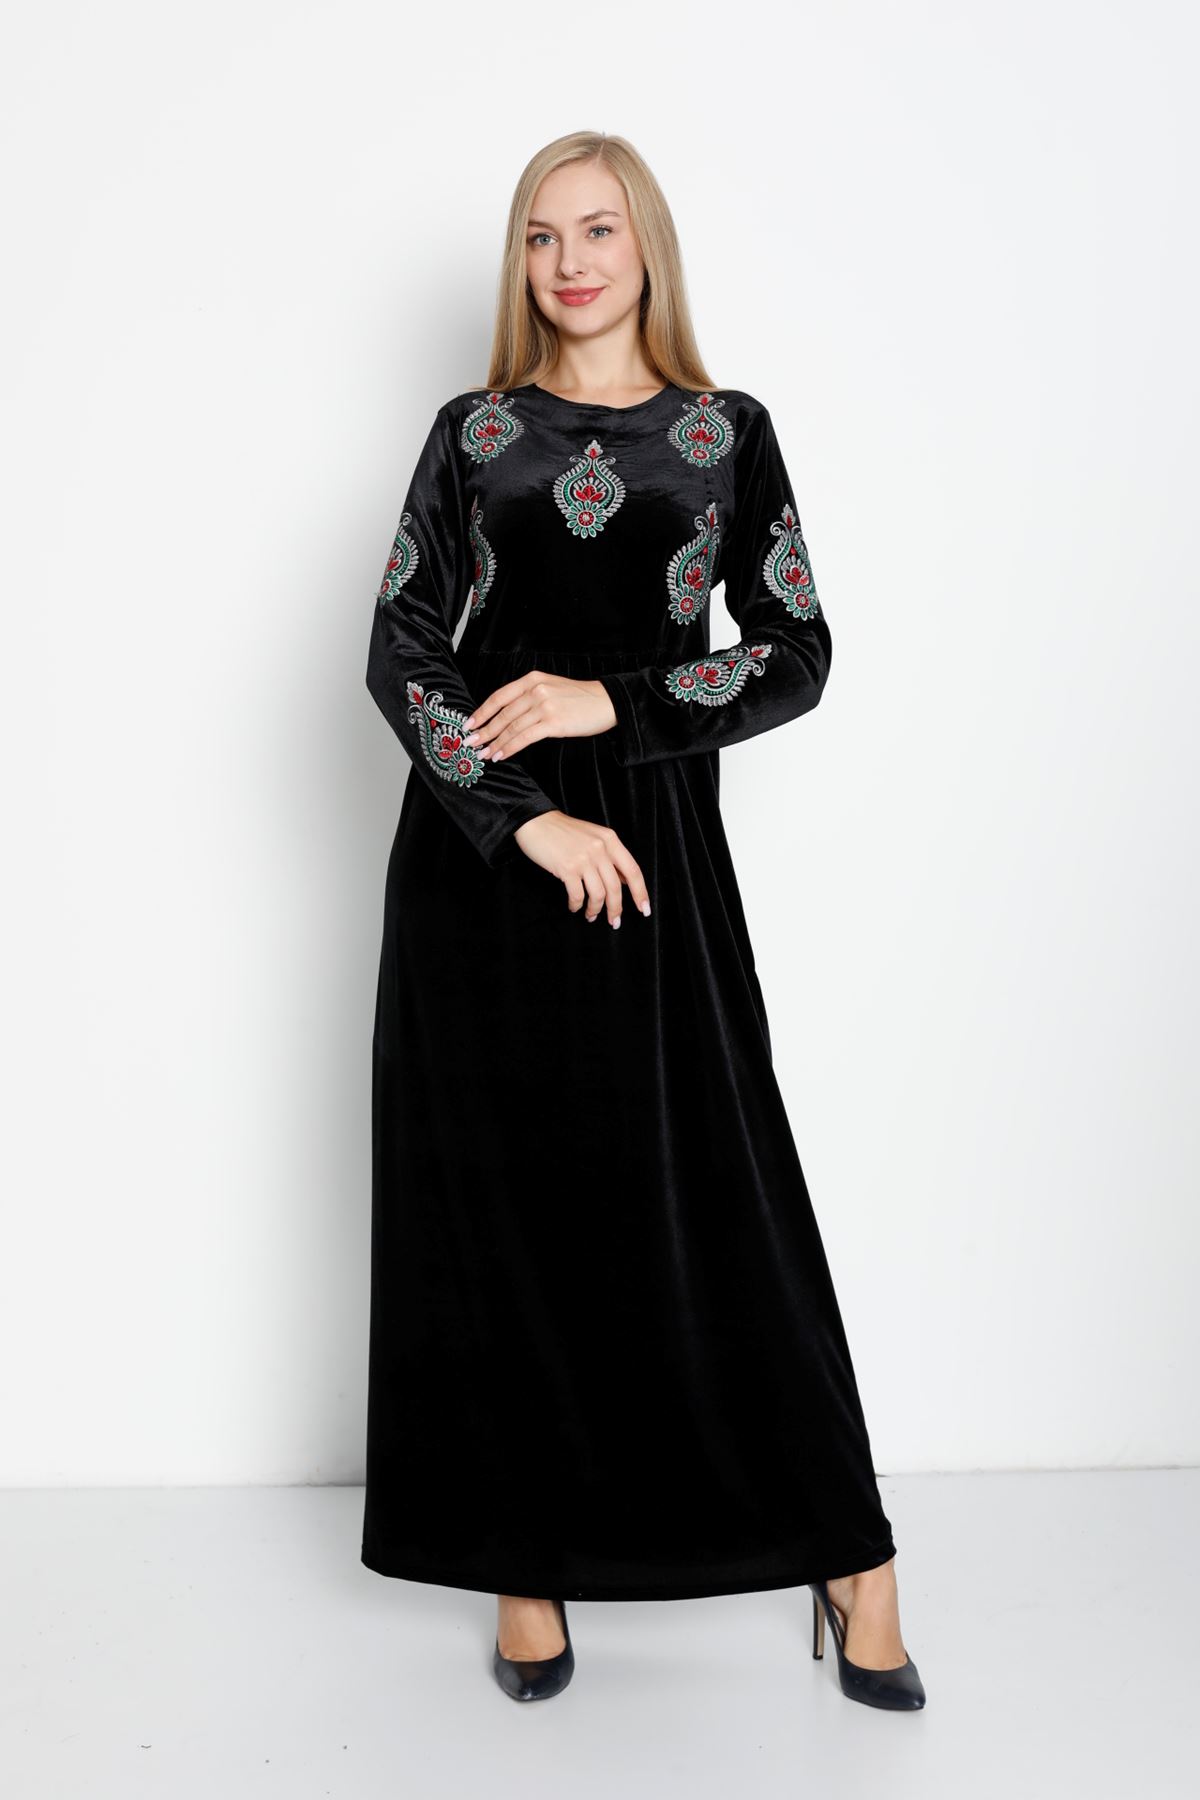 Laila Kadın Siyah Kadife Elbise